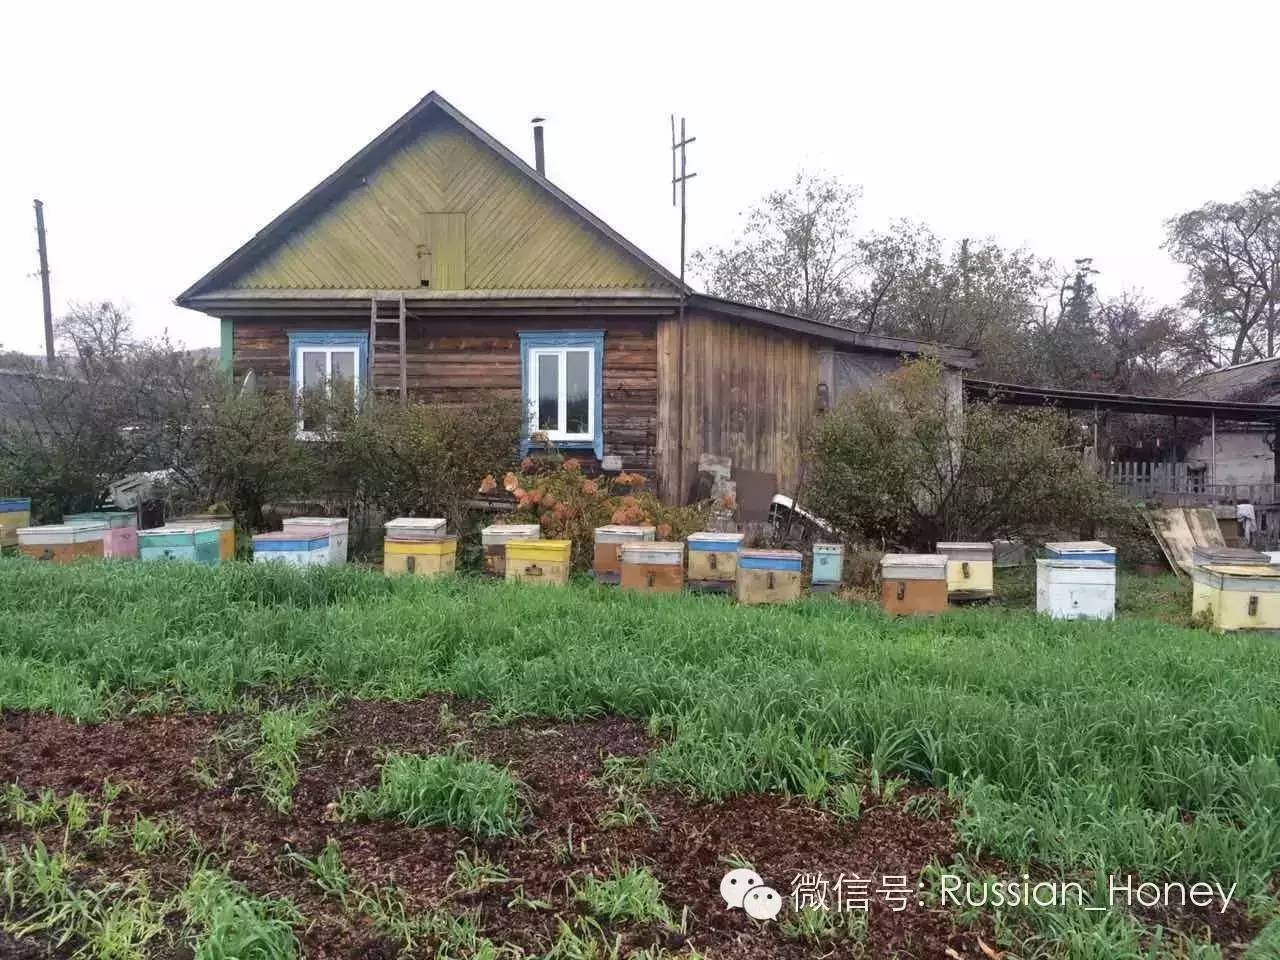 鸡蛋清蜂蜜面膜 蜂蜜加工设备 浓缩蜂蜜 蜂蜜的作用与功效 蜂蜜作用